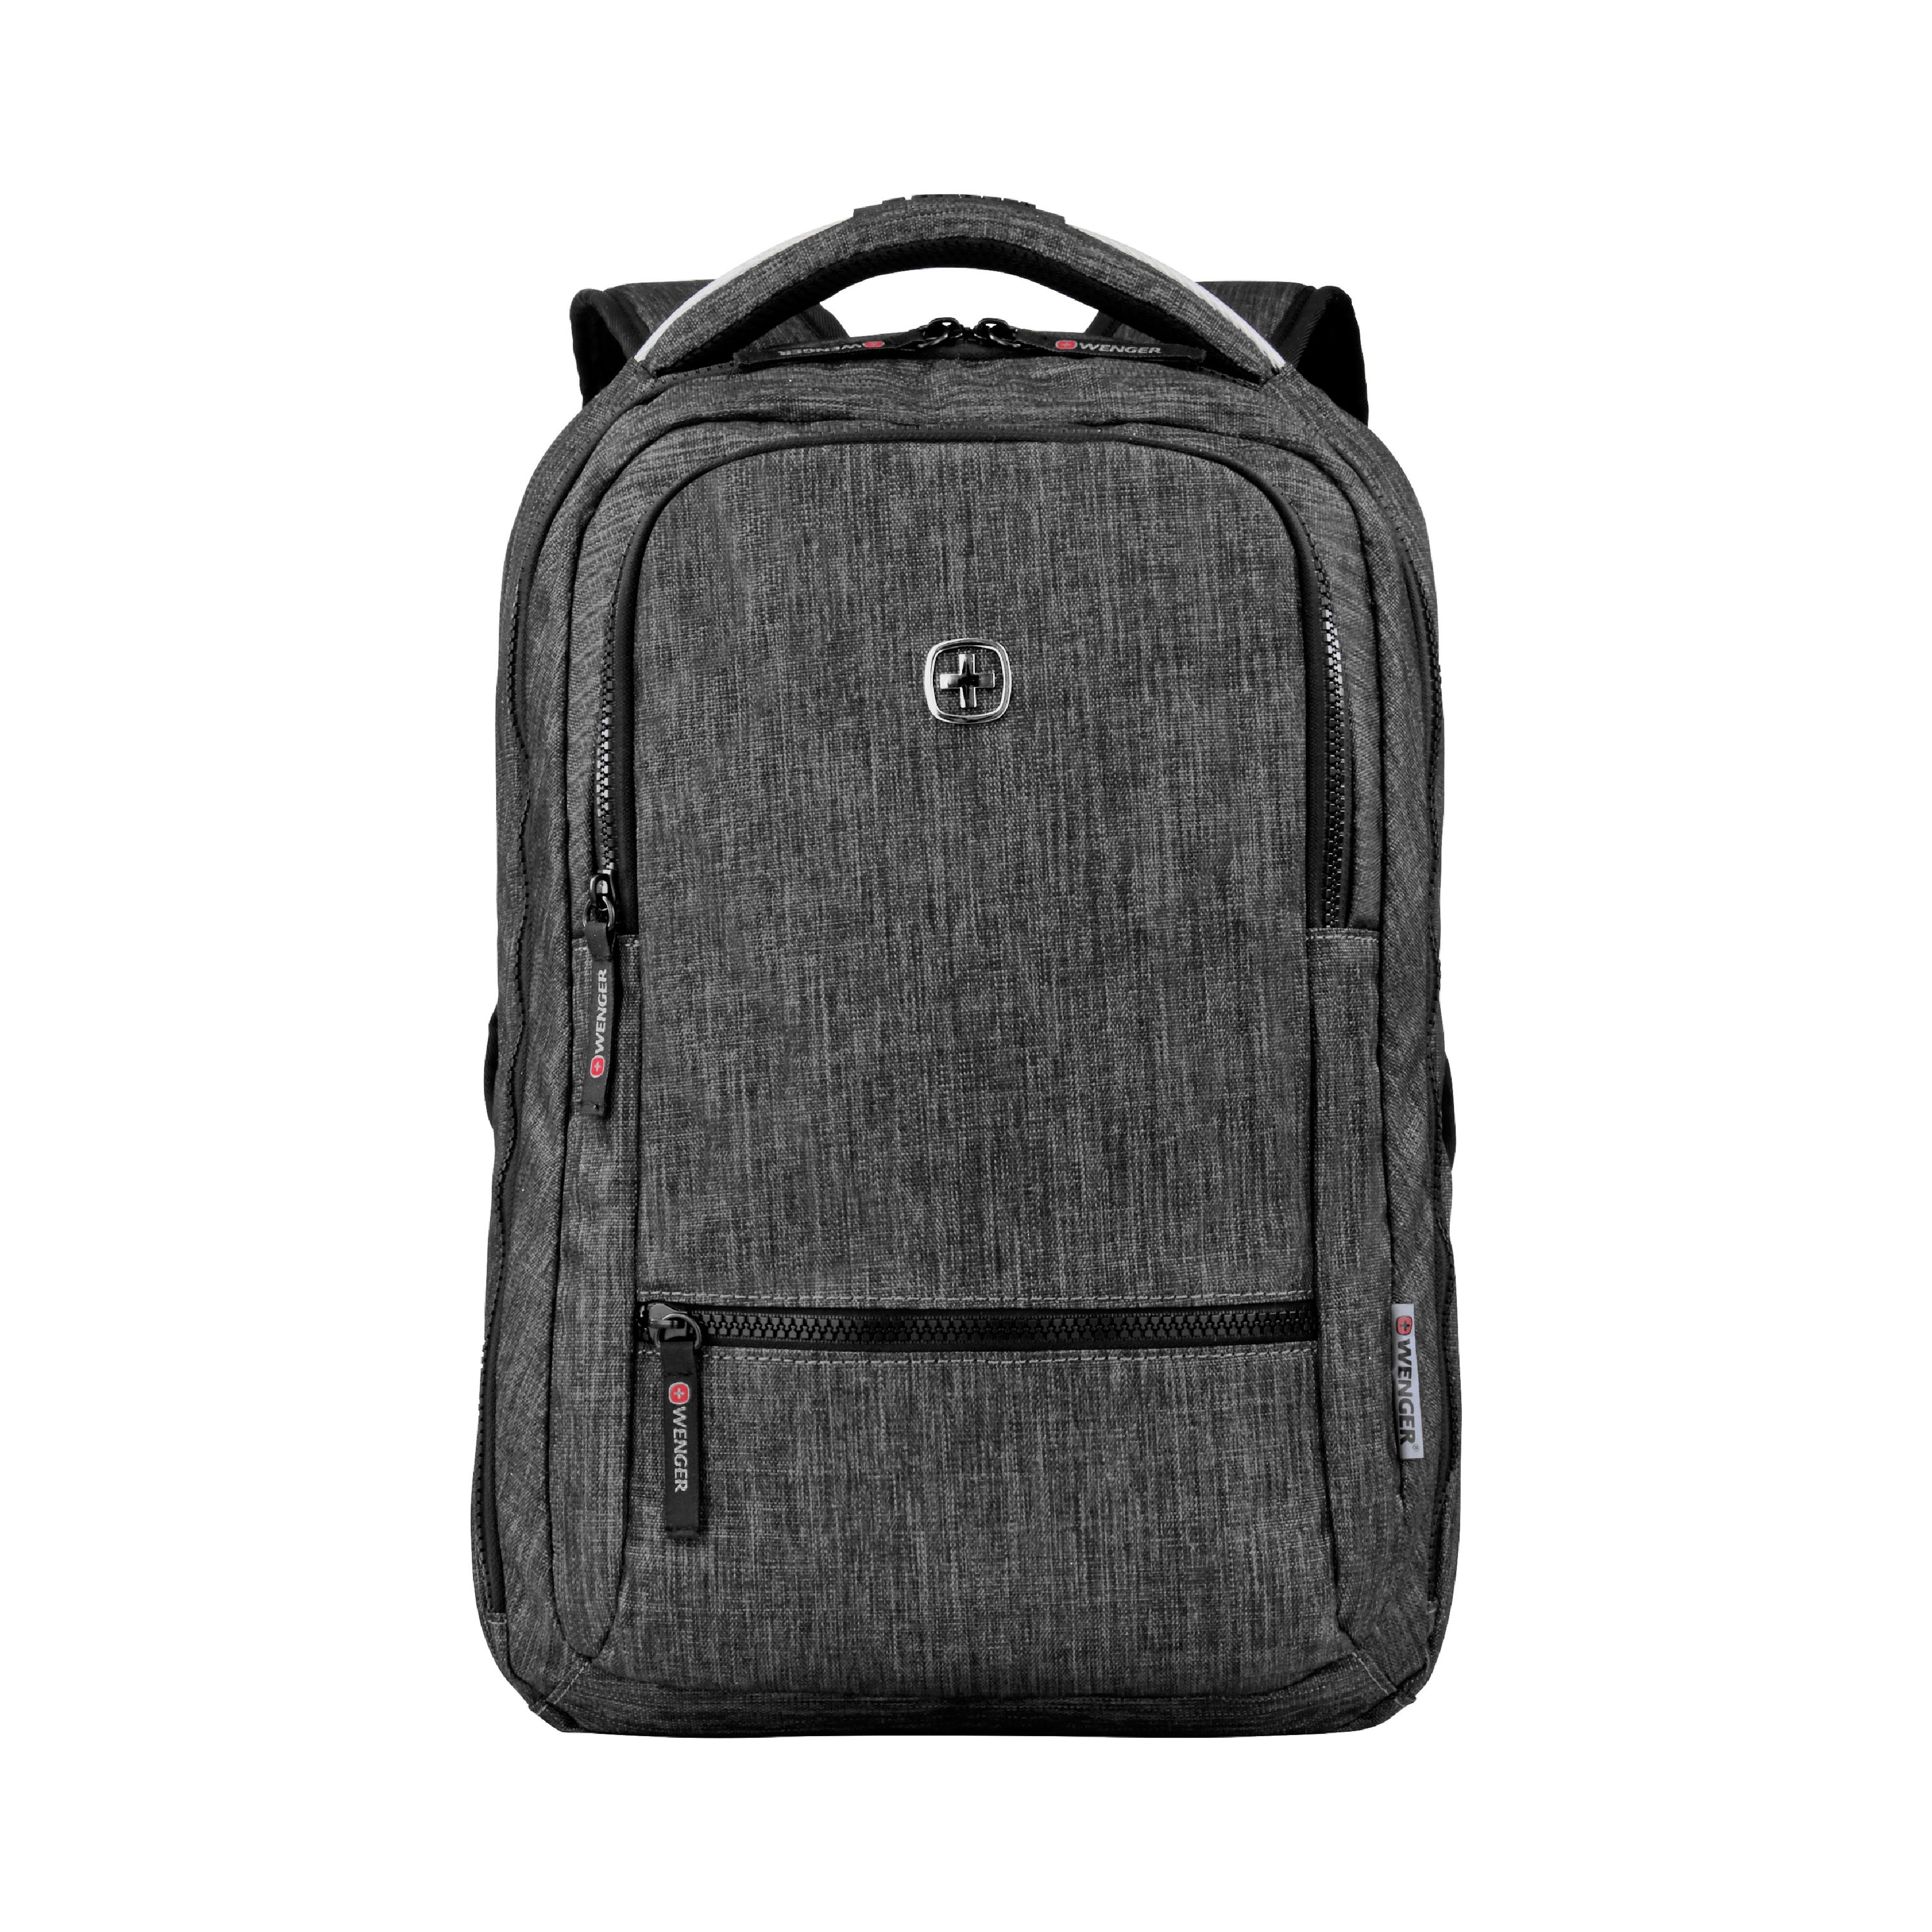 Slim Business Laptop Backpack Elegant Casual Daypacks Shoulder Bag - Gray, Standard - Standard Grey